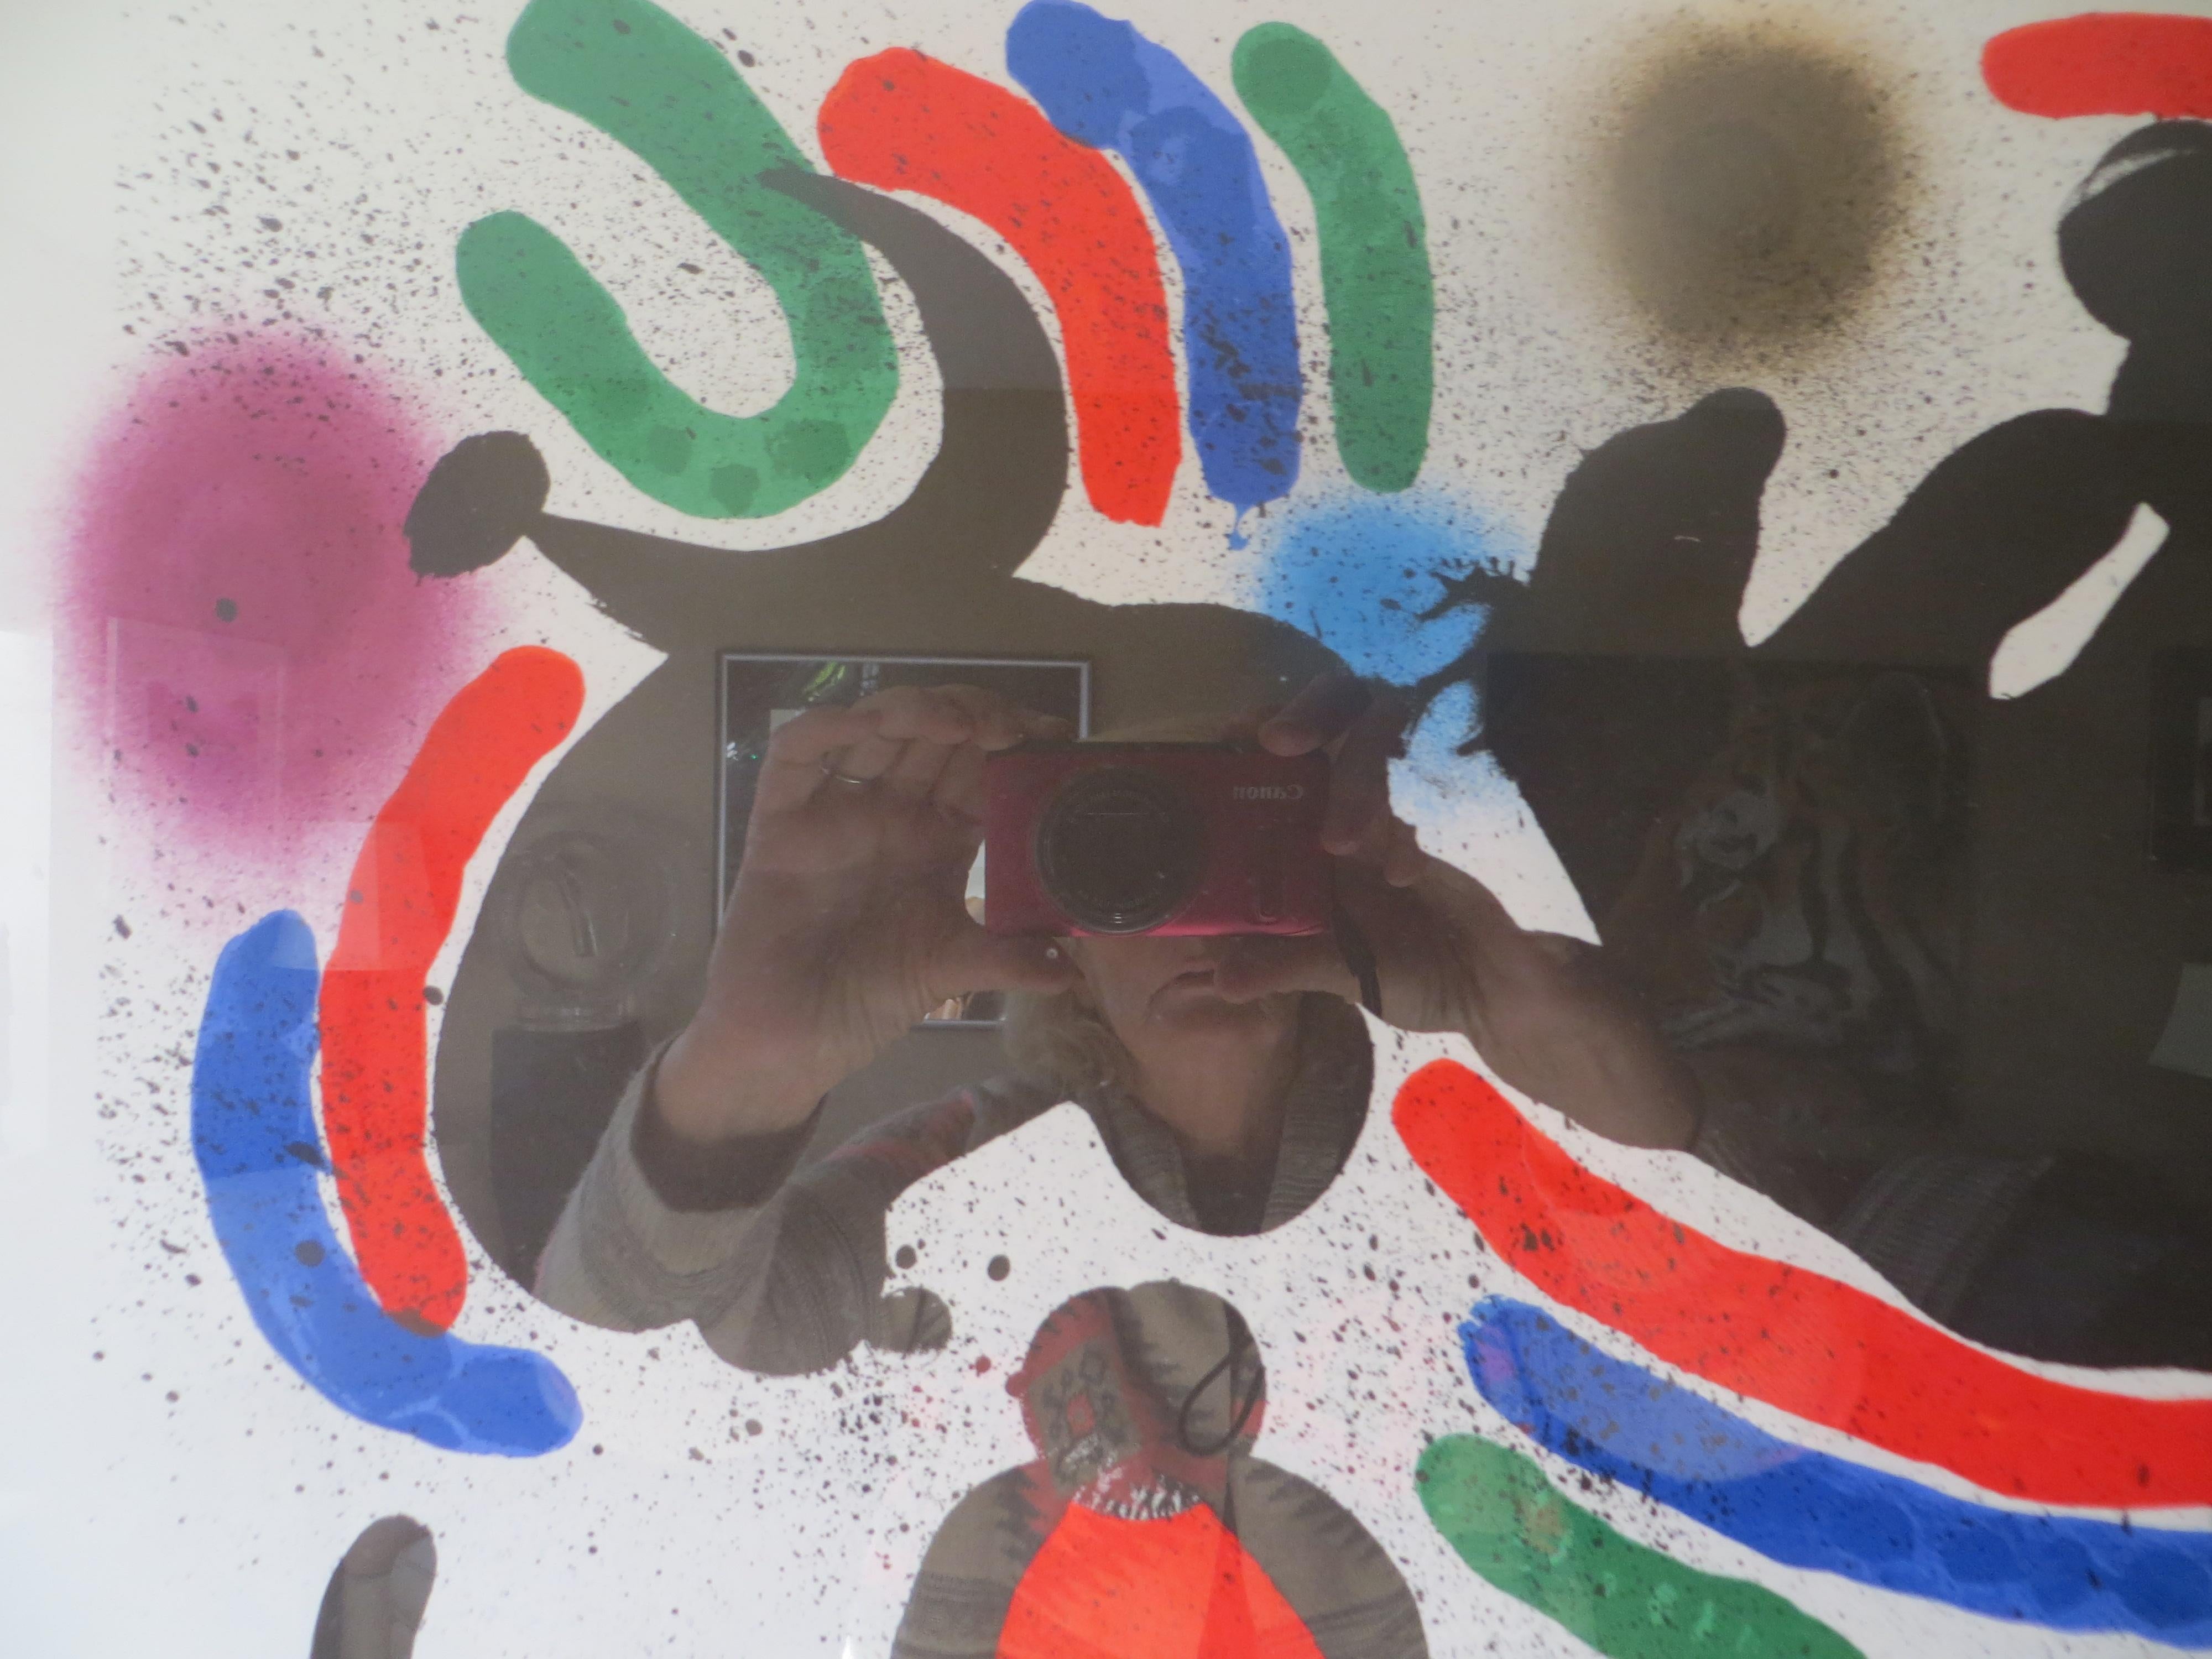 Dessiné par Joan Miro (espagnol, 1893 - 1983)
Sans titre, non signé et non numéroté.
Publié en 1978 par la Gallery Maegh pour Derriere Le Miroir.
Lithographie offset
Joan Miro est un peintre, sculpteur et céramiste catalan né à Barcelone. Un musée